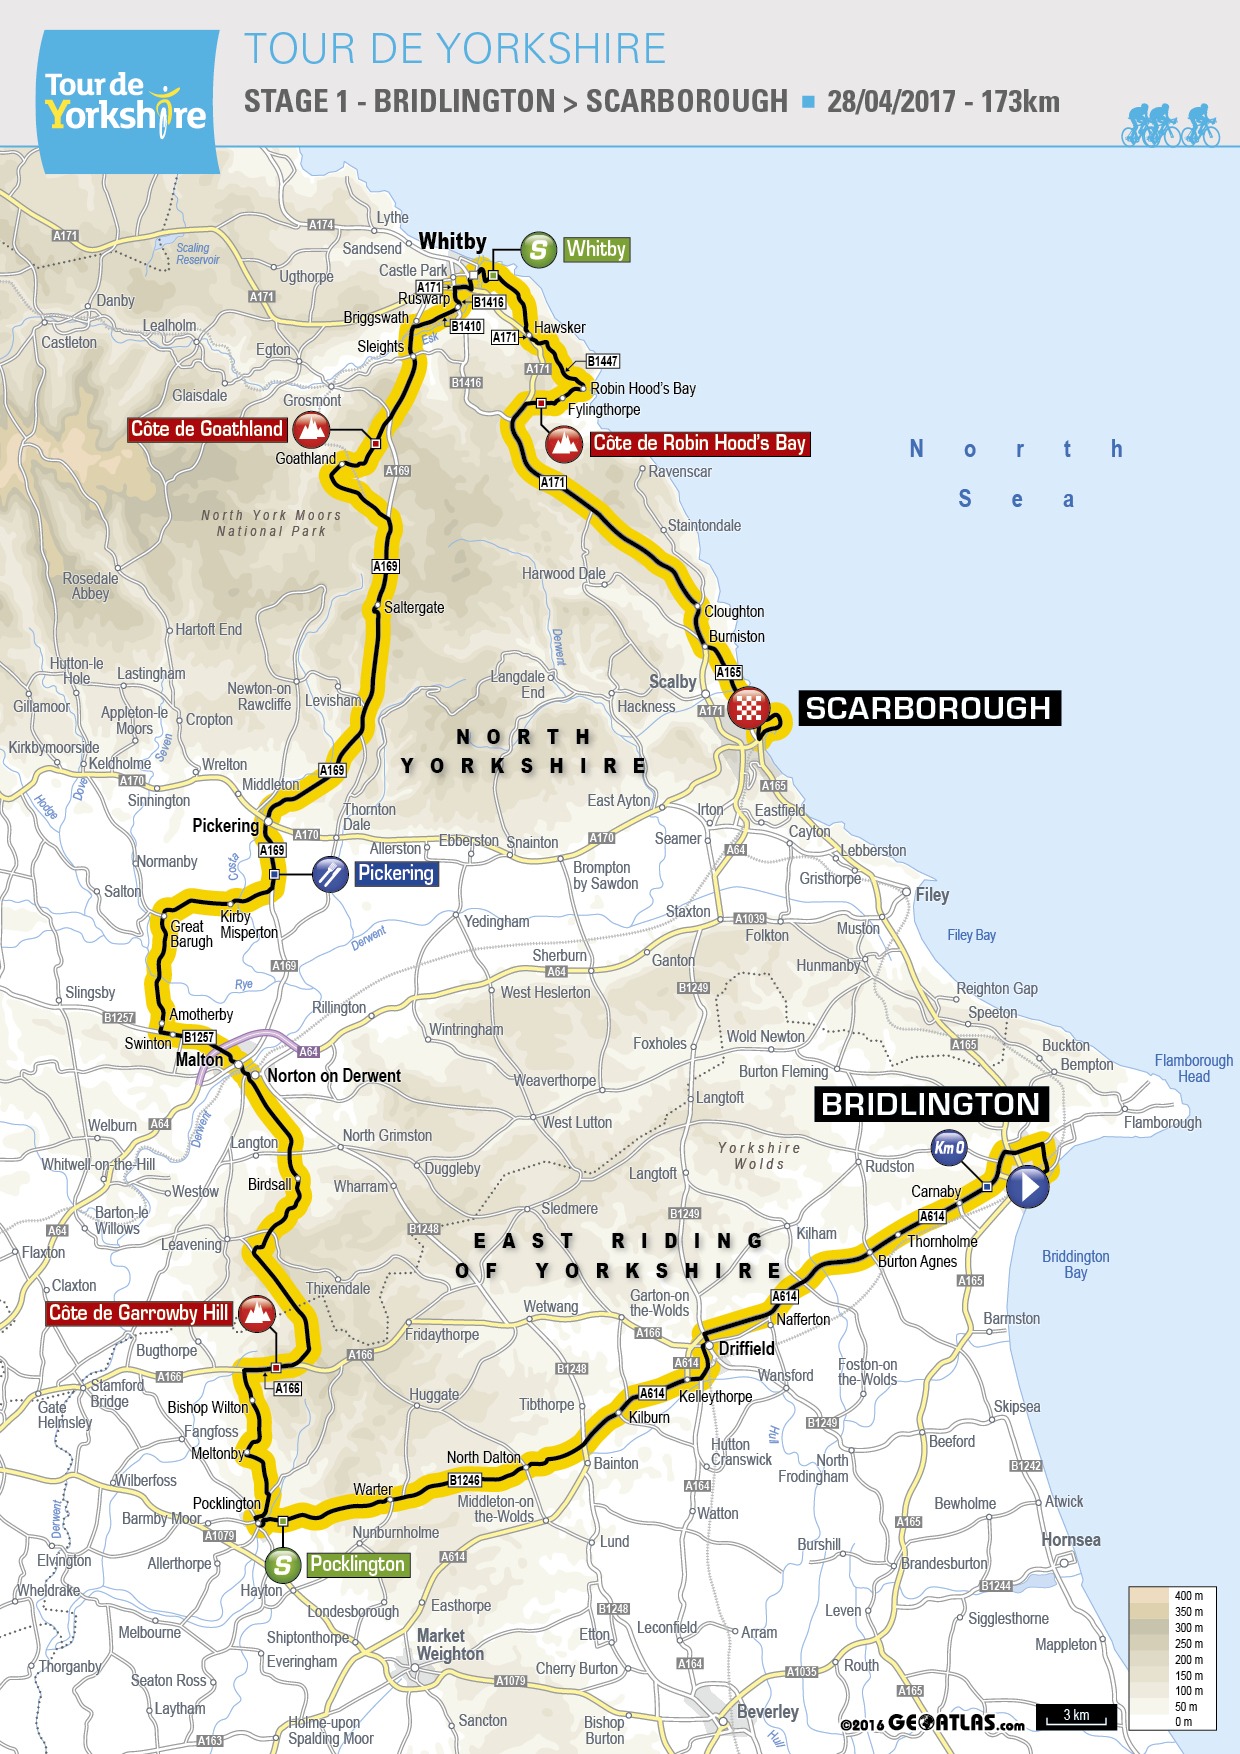 Tour de Yorkshire 2017 Stage 1 map